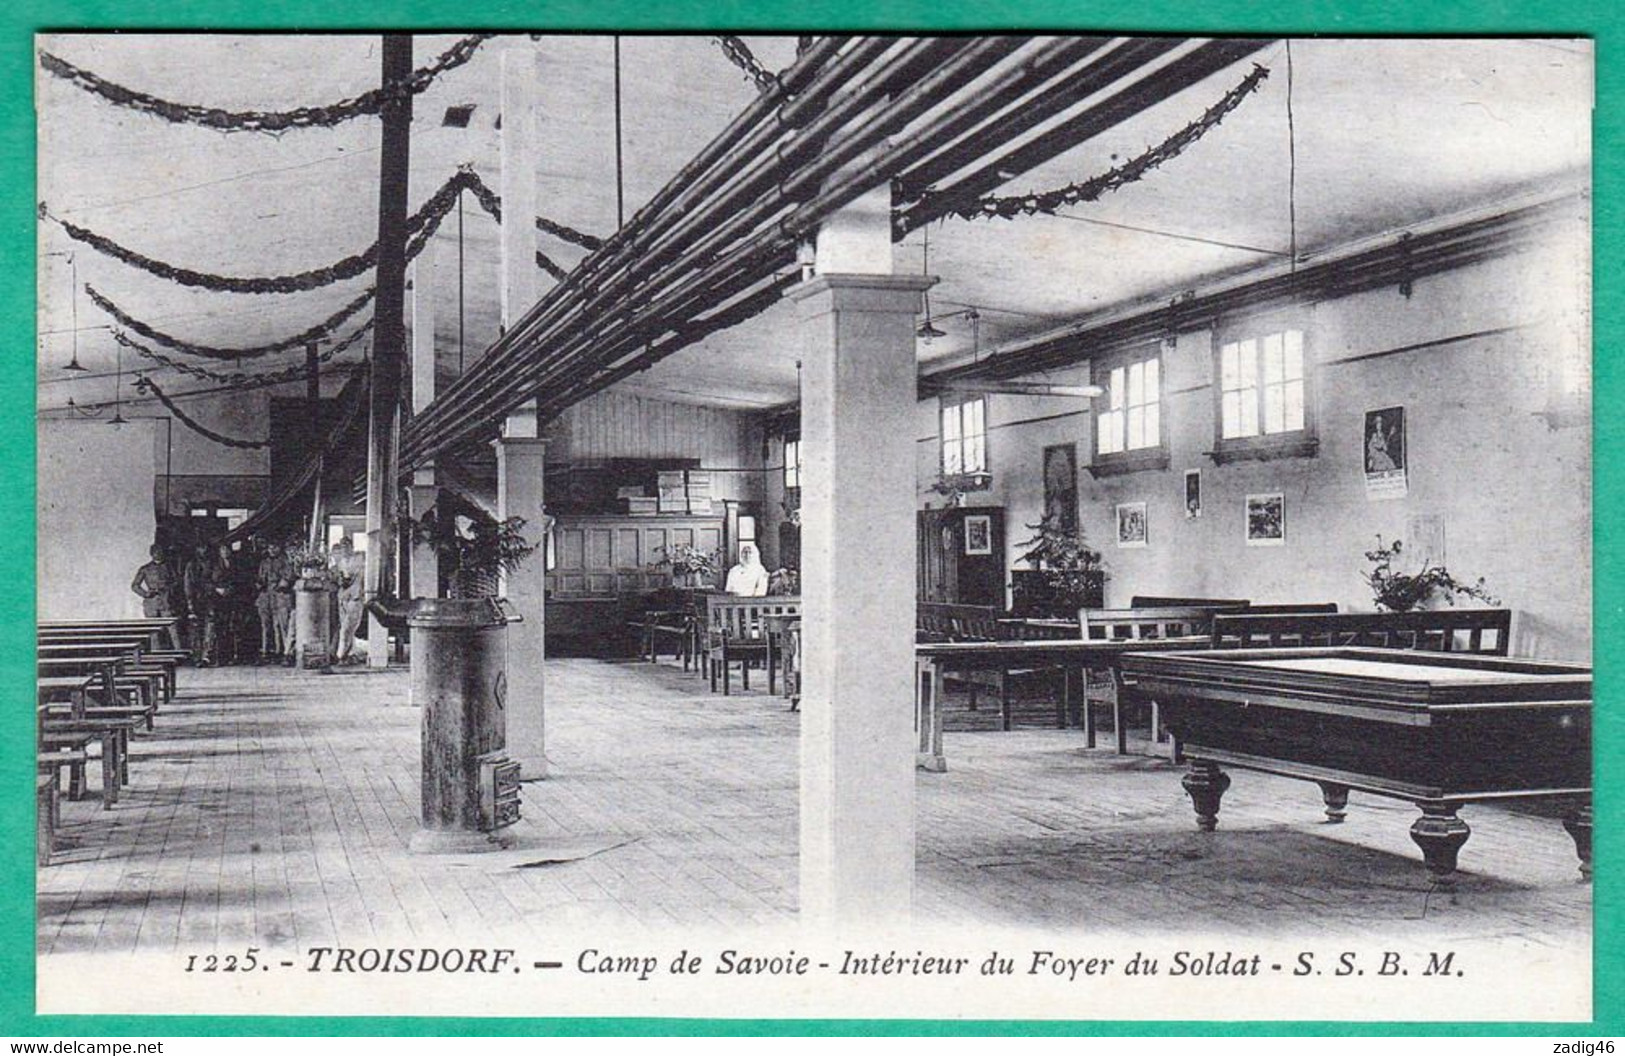 1225 - TROISDORF - CAMP DE SAVOIE - INTERIEUR DU FOYER DU SOLDAT - Troisdorf